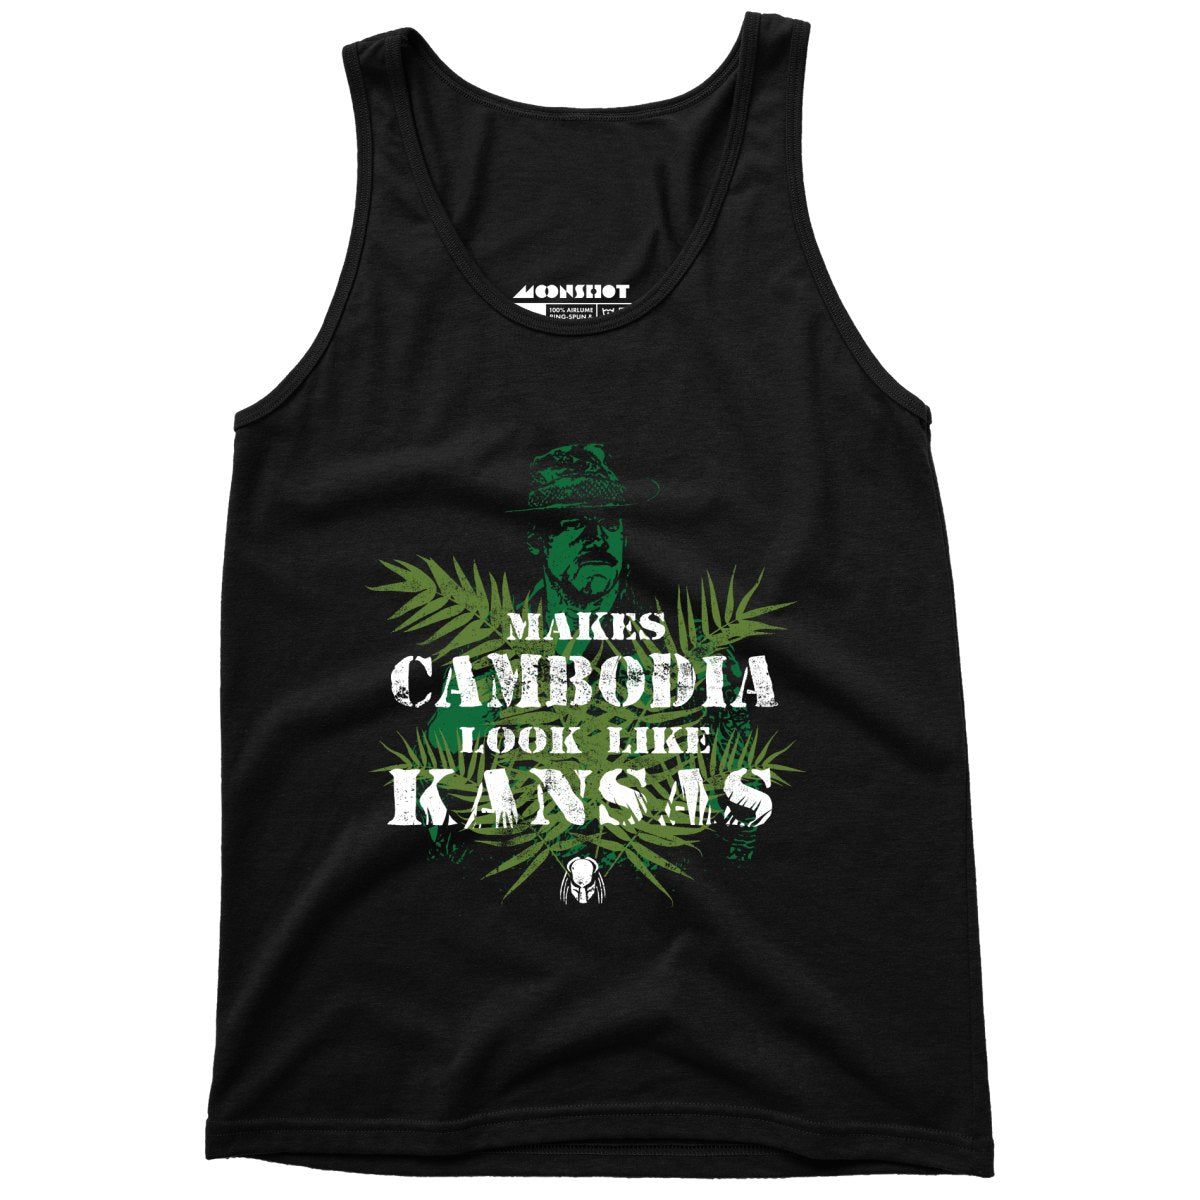 Predator - Makes Cambodia Look Like Kansas - Unisex Tank Top